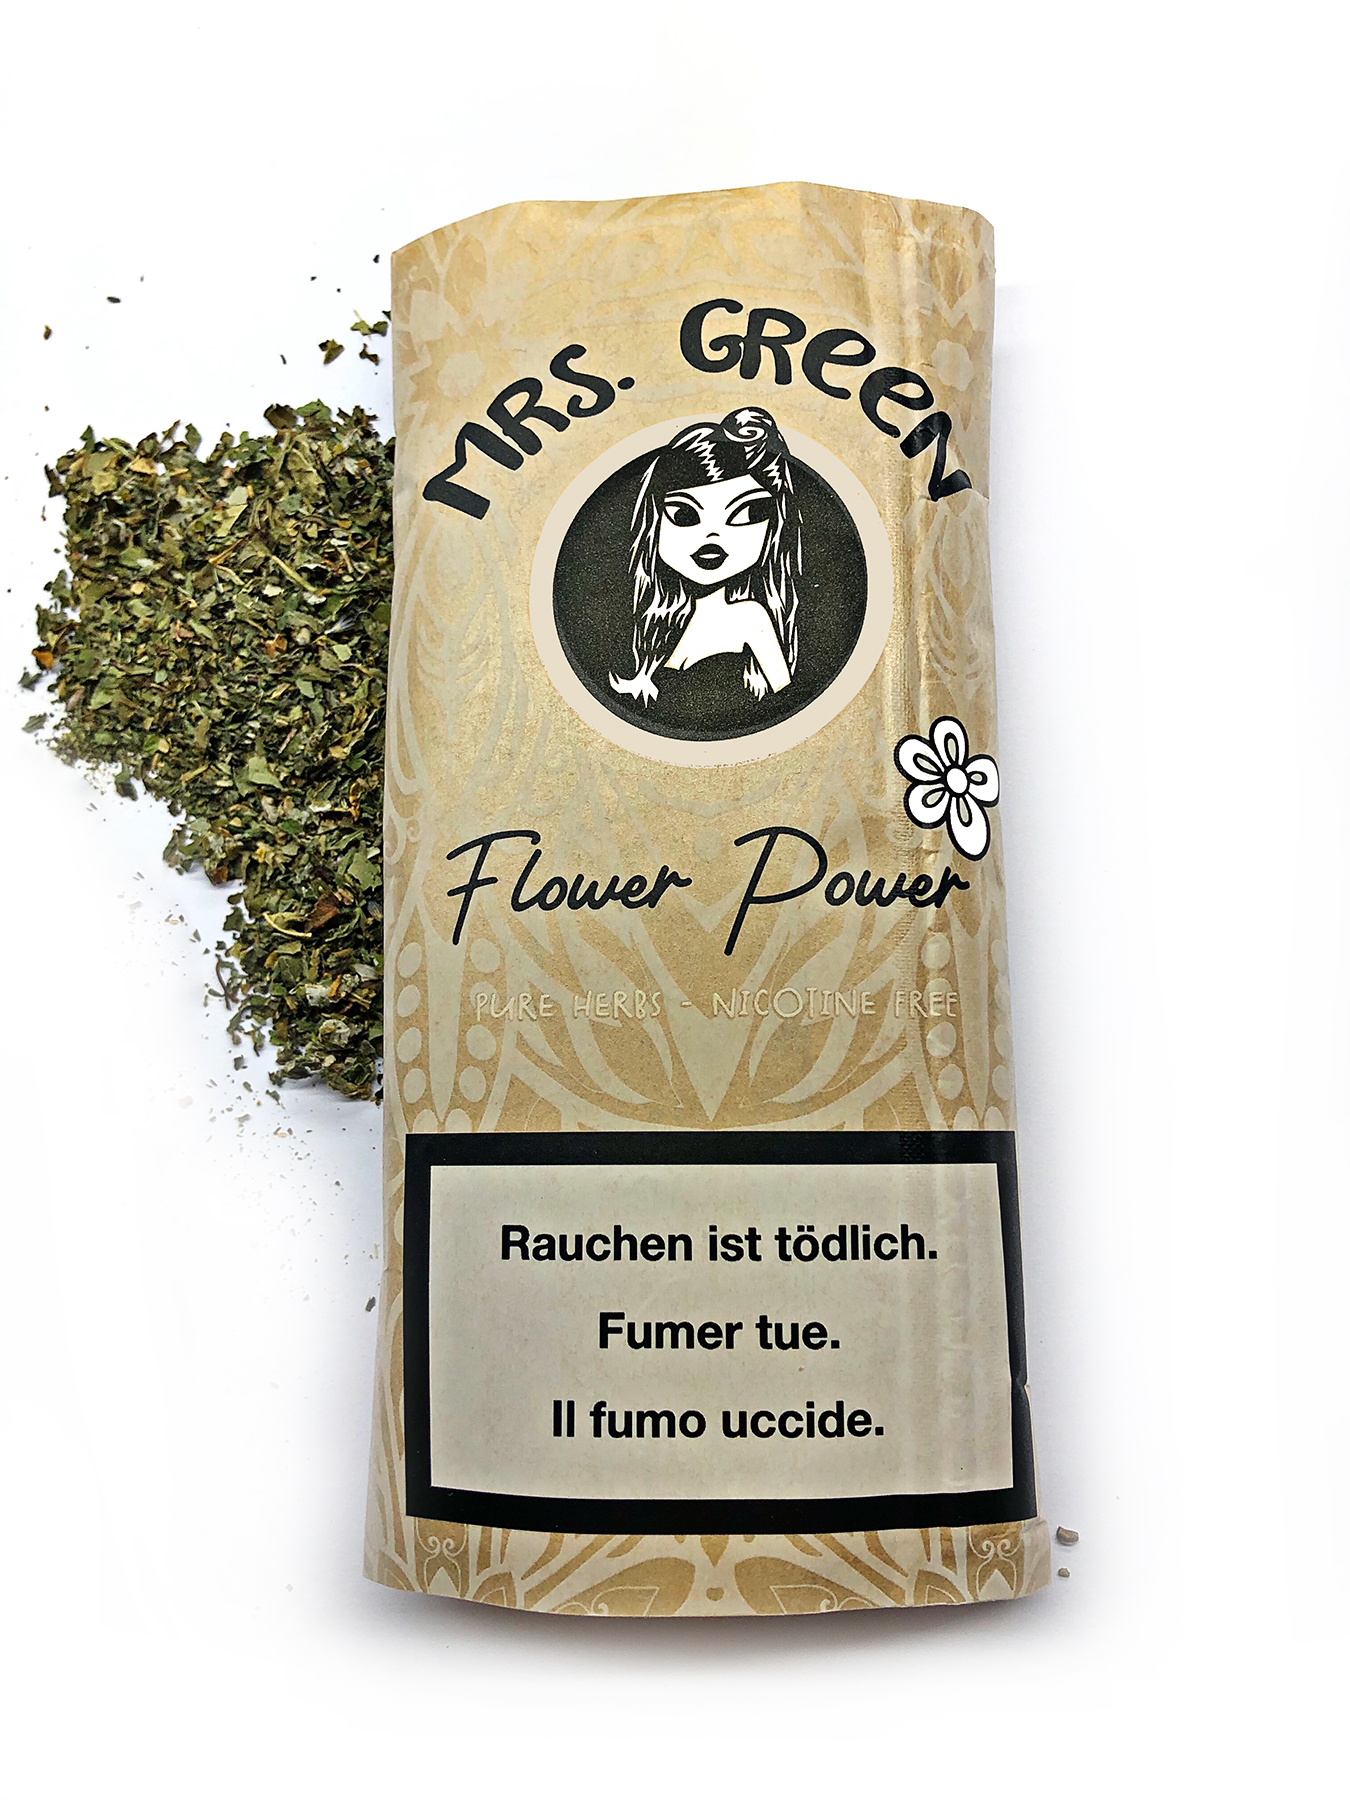 Mrs. Green – Flower Power Kräutermischung 20g (100% nikotinfrei und natürlich)